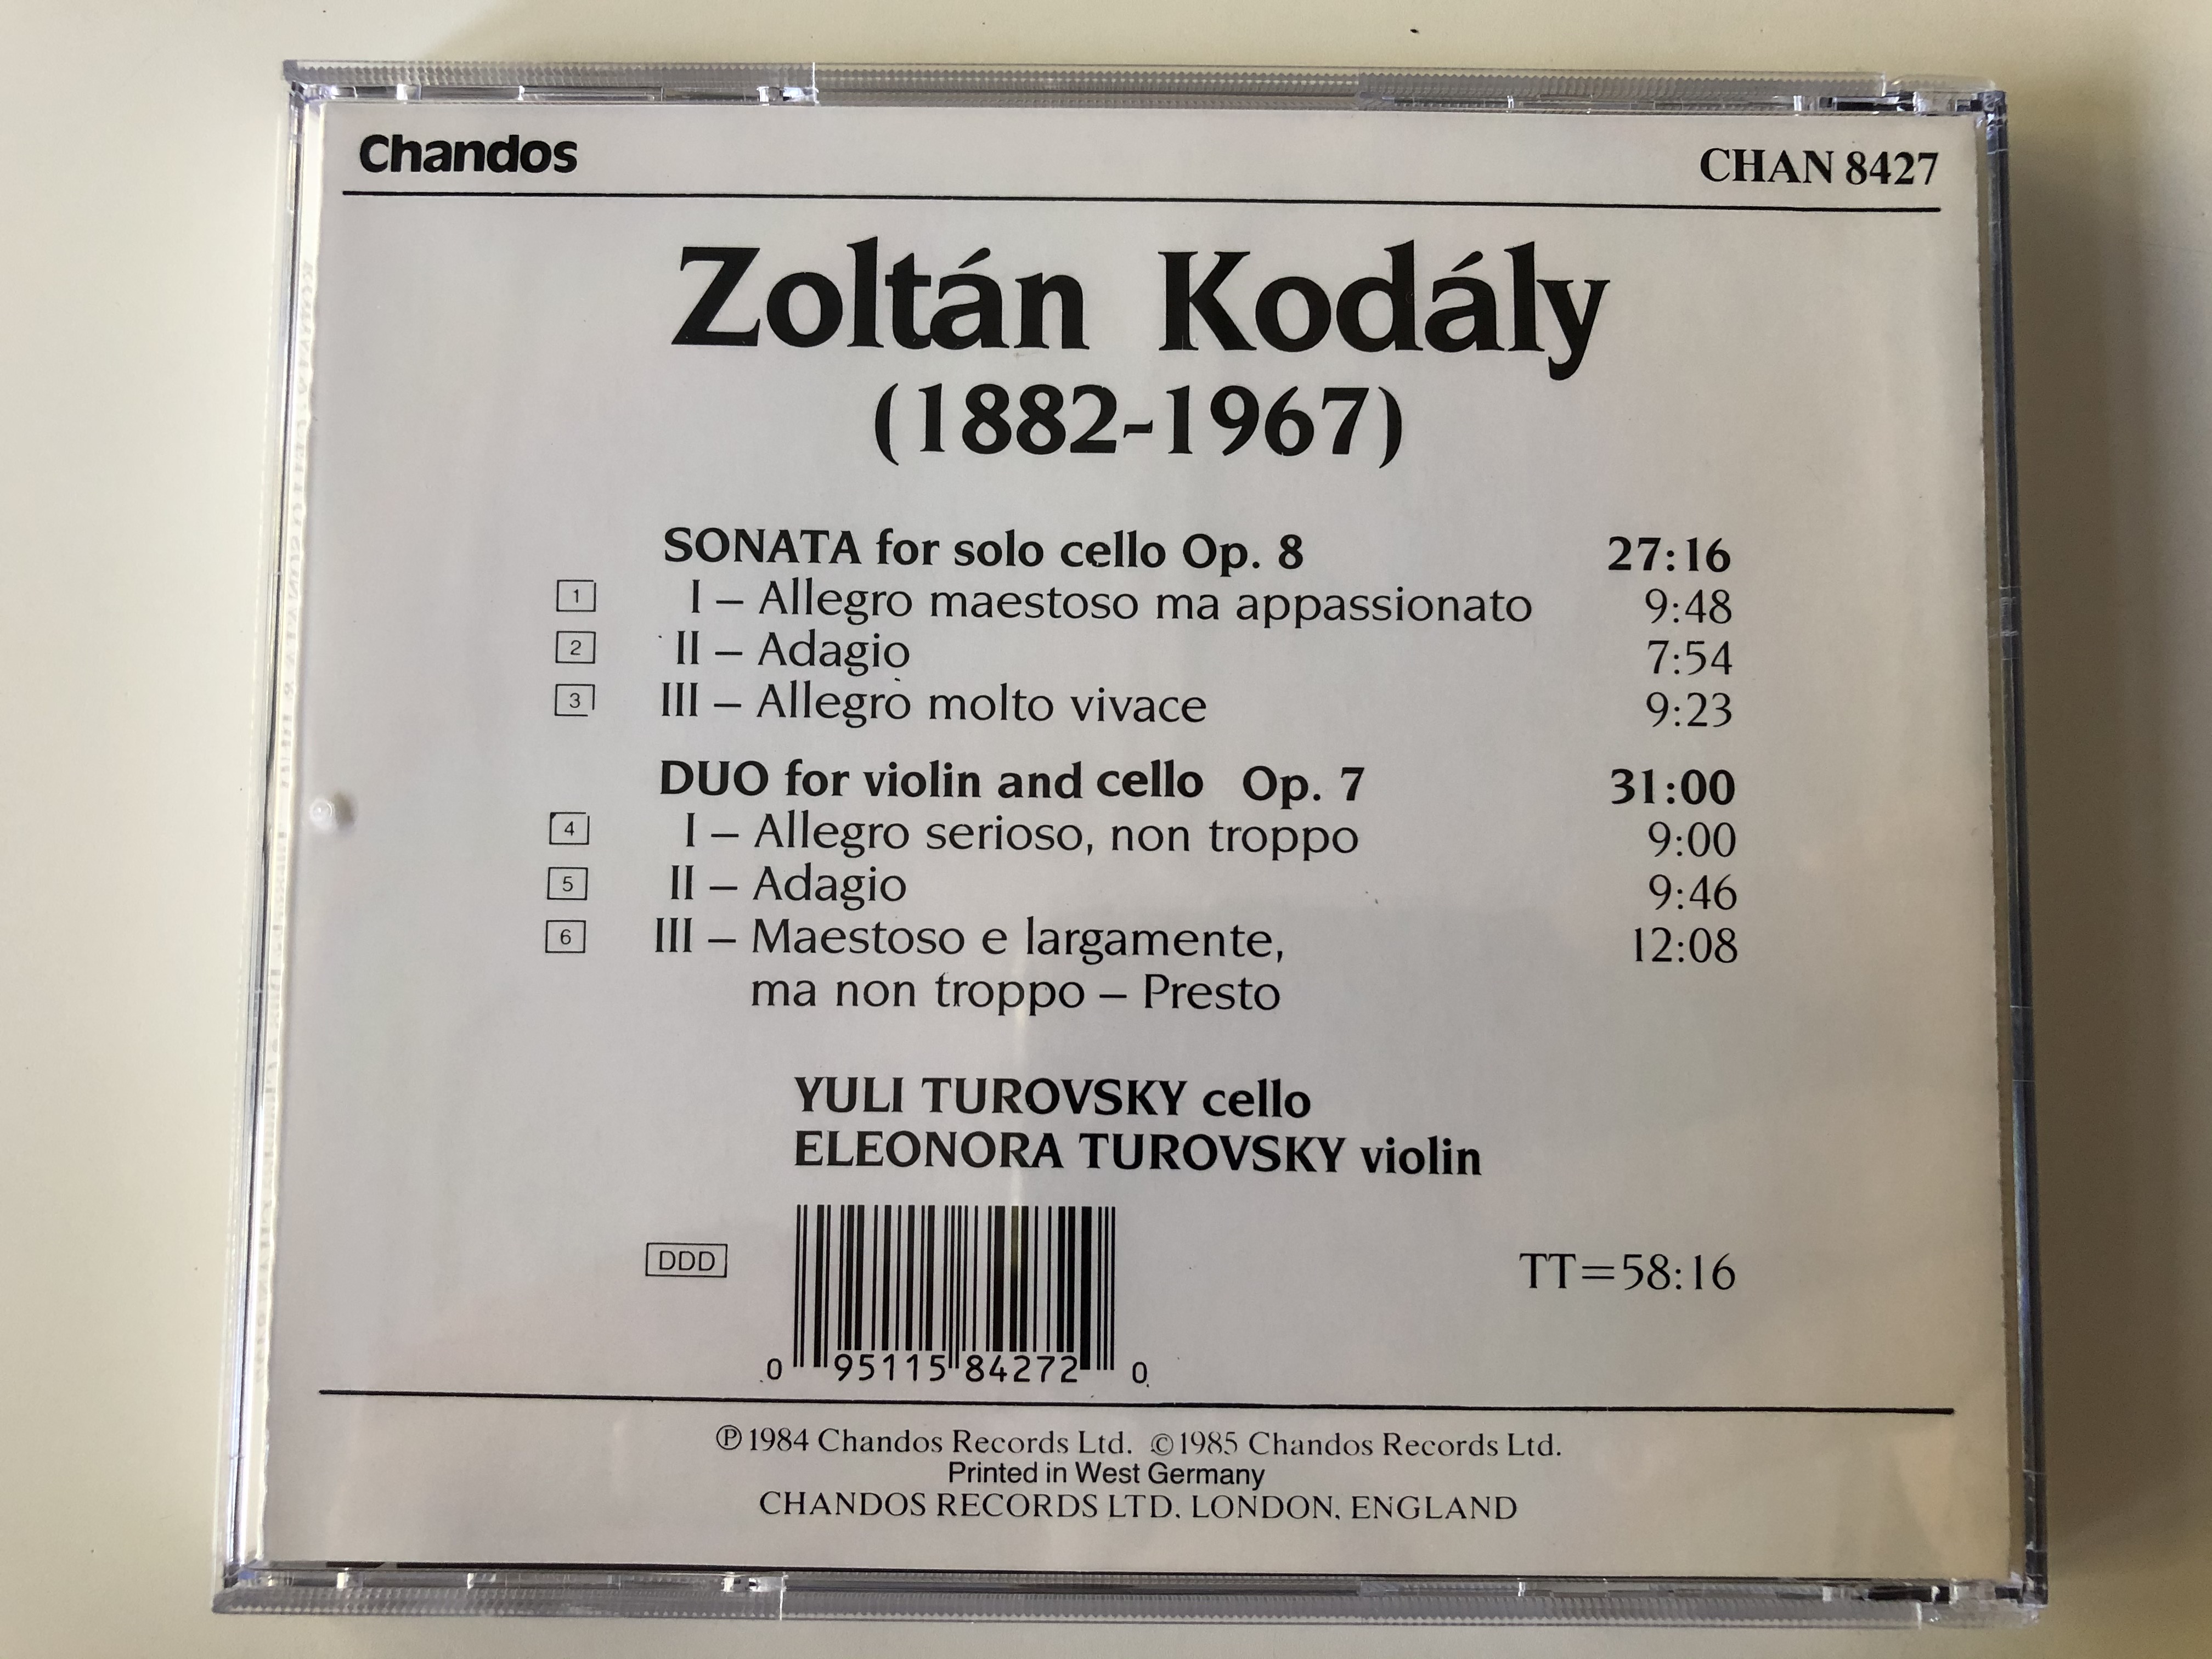 kod-ly-solo-cello-sonata-op.8-duo-for-violin-and-cello-op.7-yuli-turovsky-cello-eleonora-turovsky-violin-chandos-audio-cd-1985-chan-8427-7-.jpg